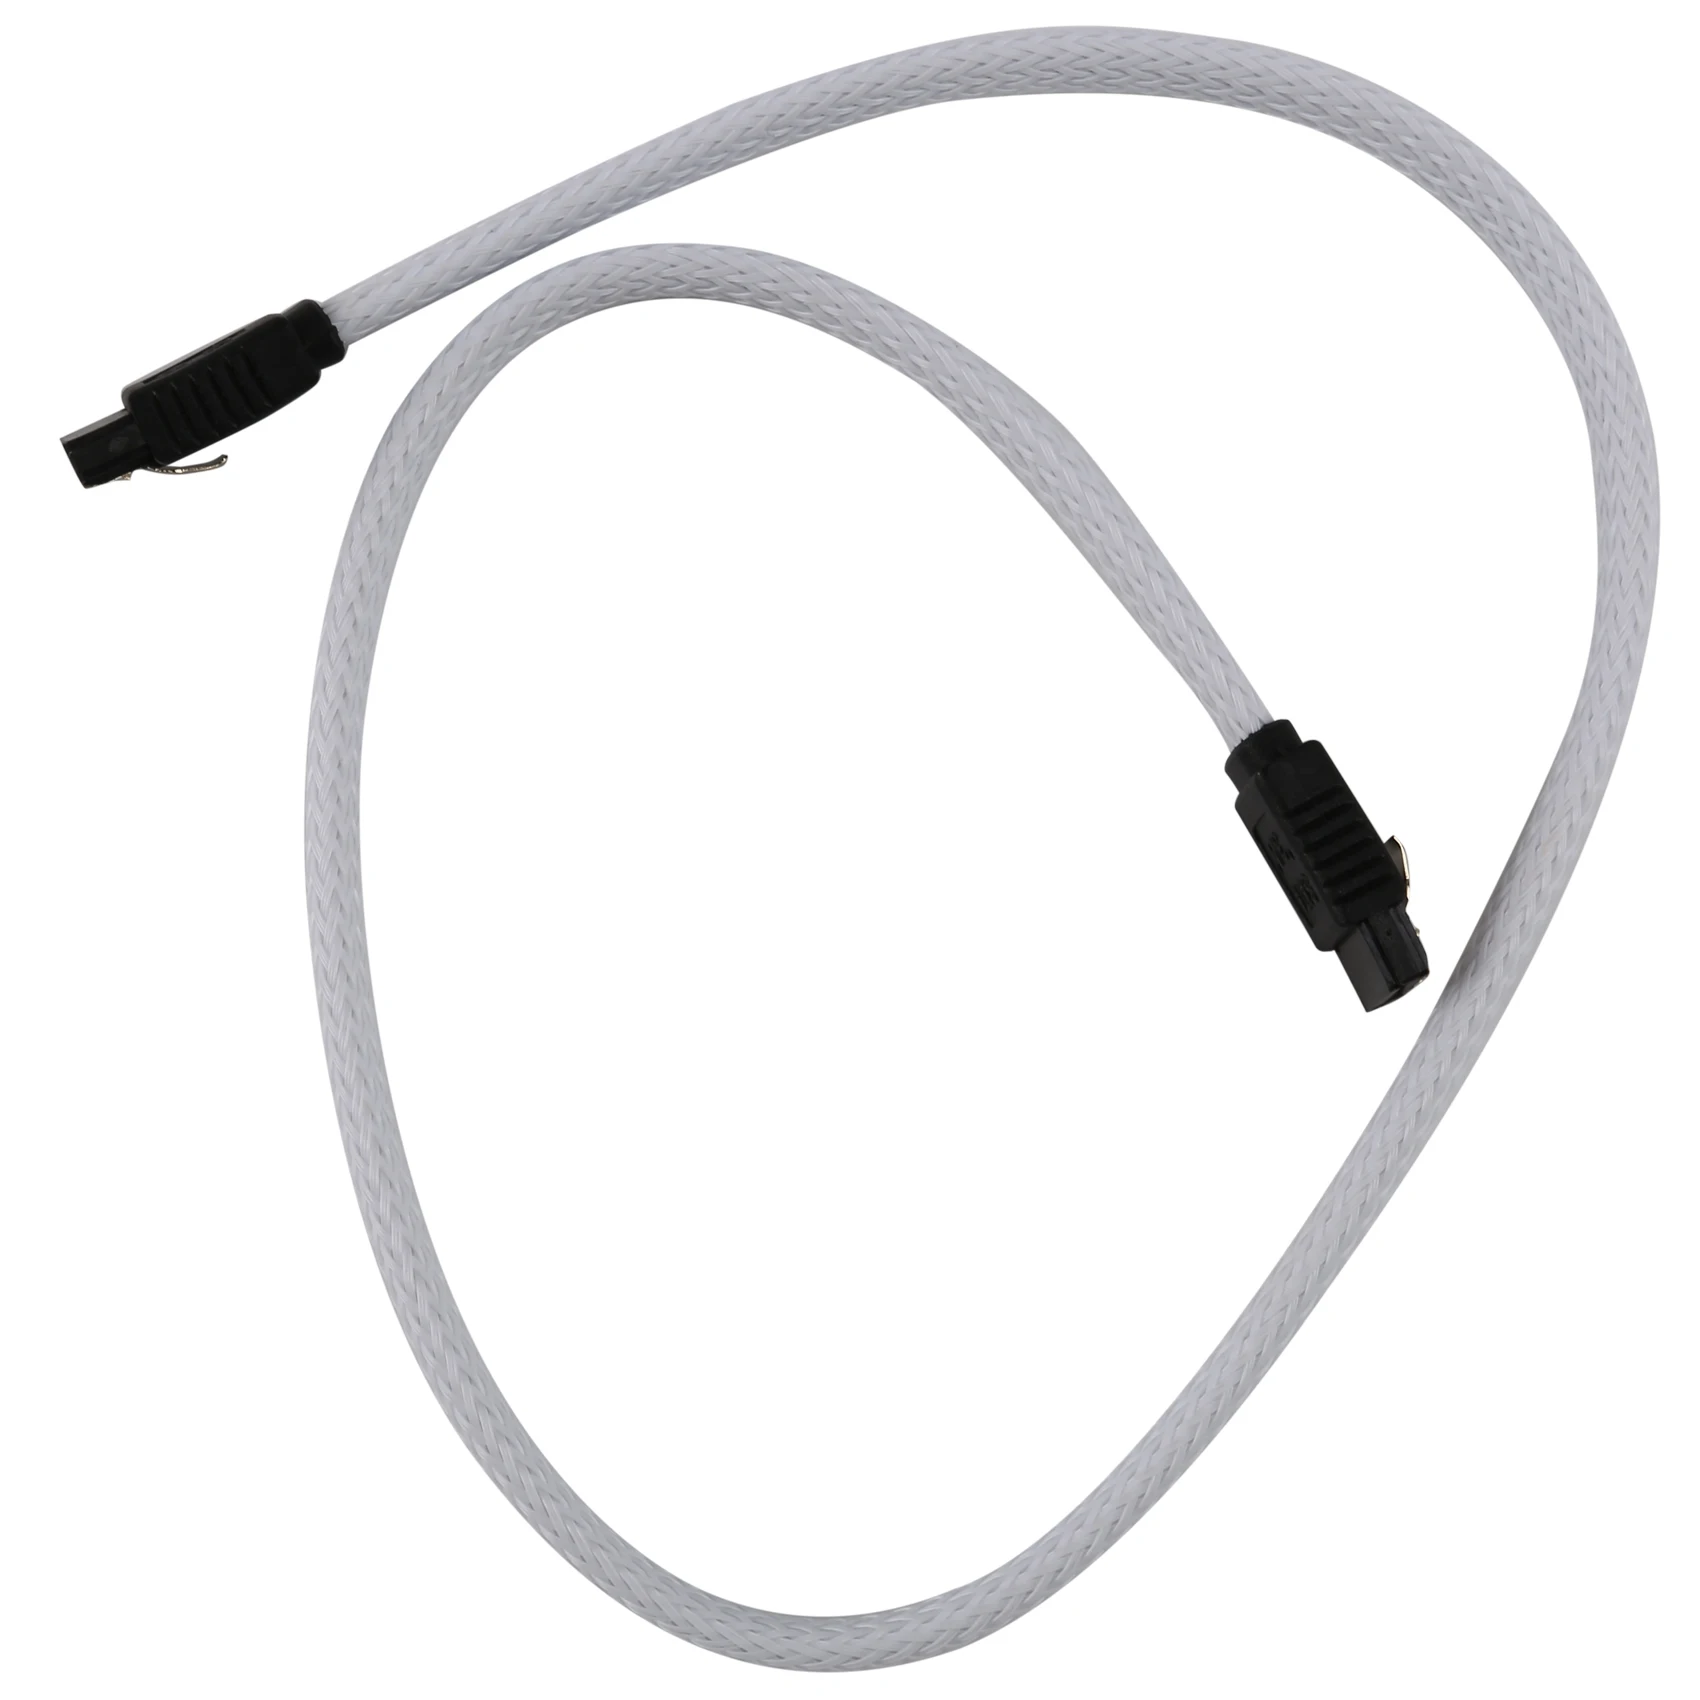 

SATA 3,0 III 7-контактный кабель для передачи данных SATA3, 50 см, 6 Гб/с, кабели SSD, кабель для жесткого диска, шнур для передачи данных с нейлоновым покрытием, премиум-версия (белый)